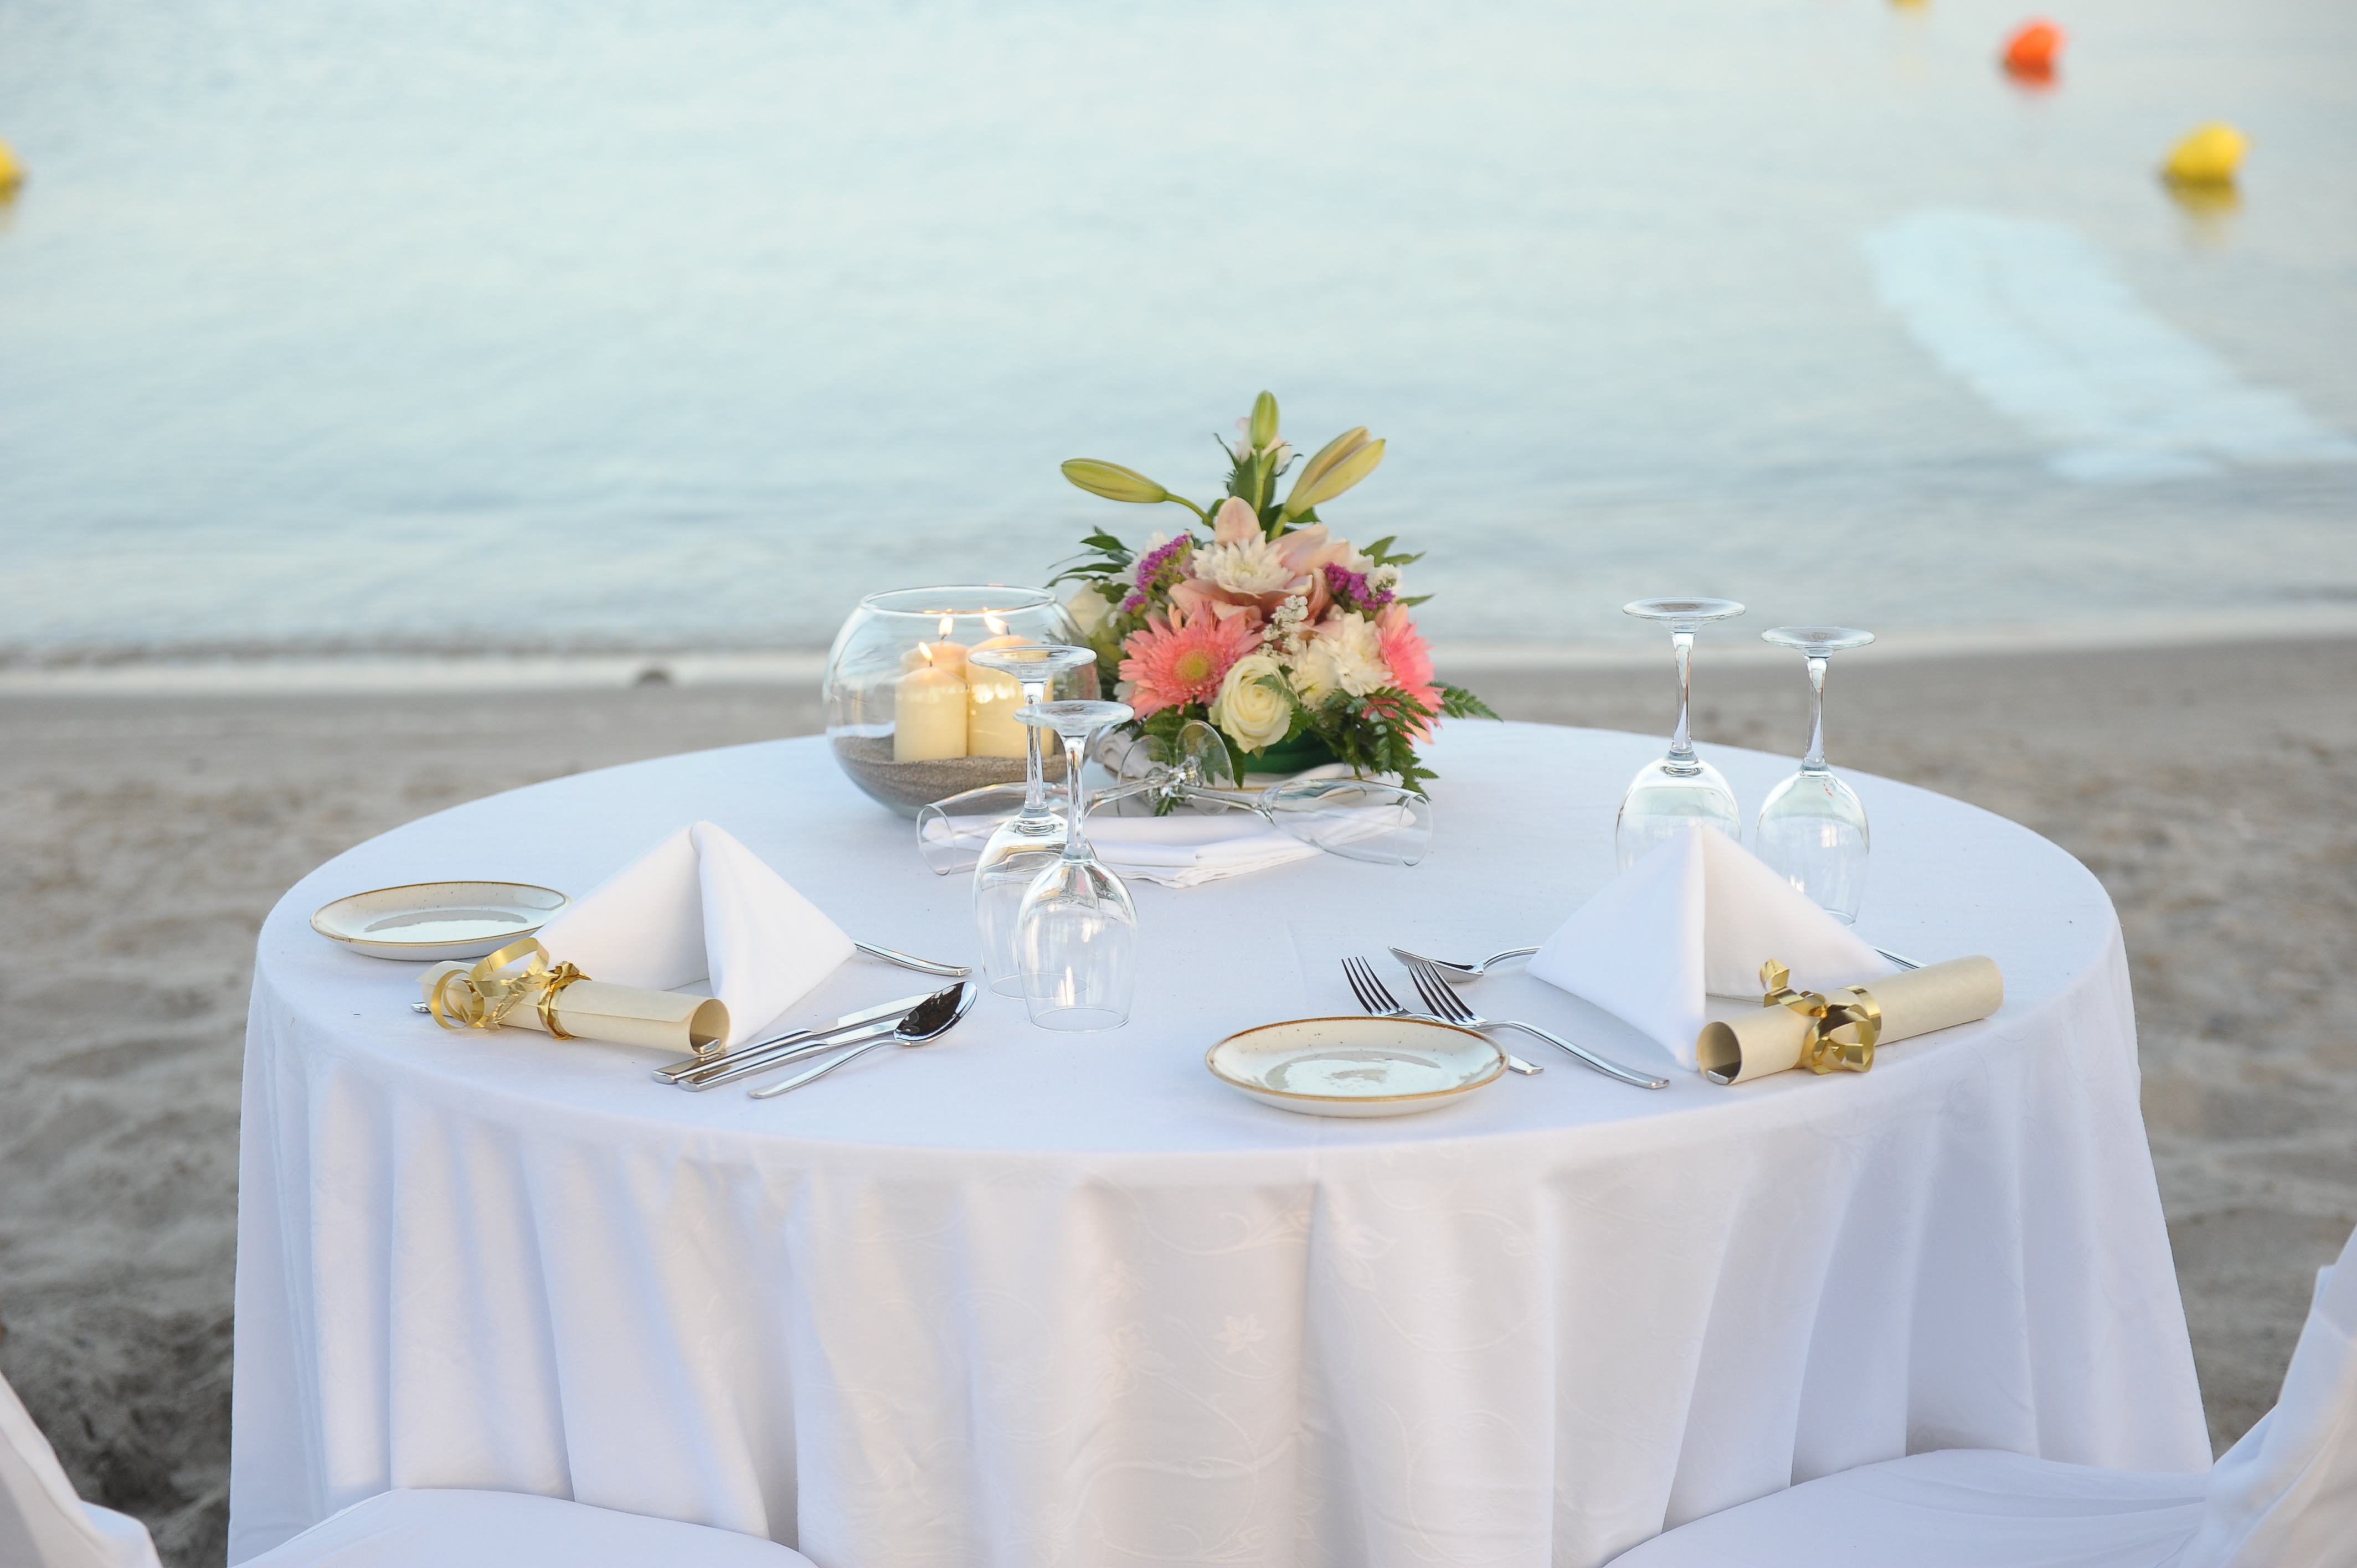 Book your wedding day in Atlantica Beach Resort